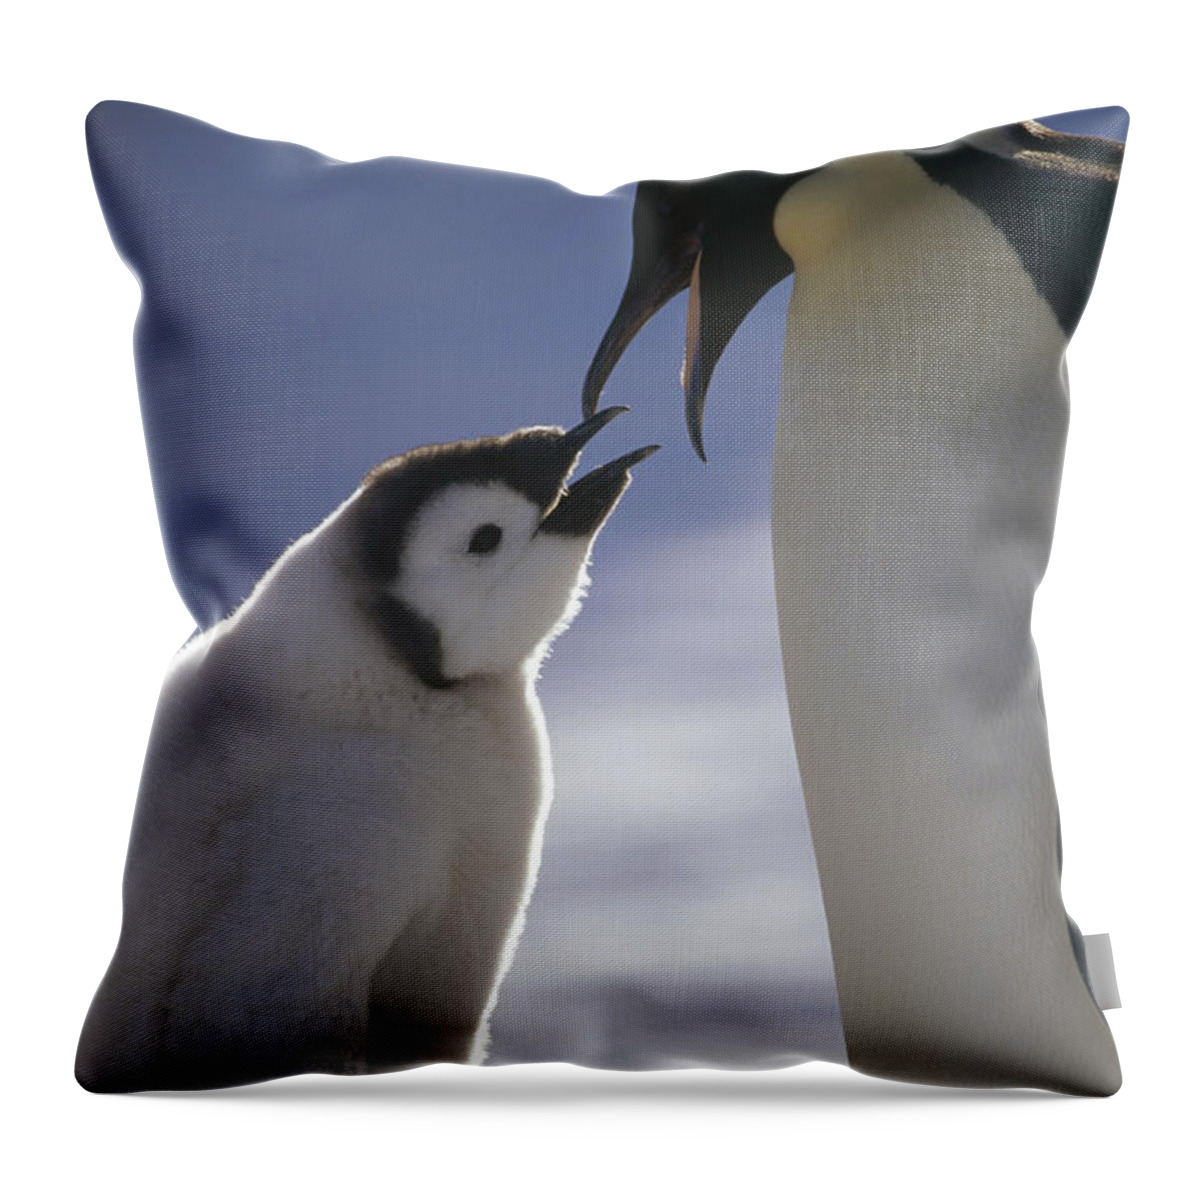 Feb0514 Throw Pillow featuring the photograph Emperor Penguin Feeding Chick Antarctica by Tui De Roy